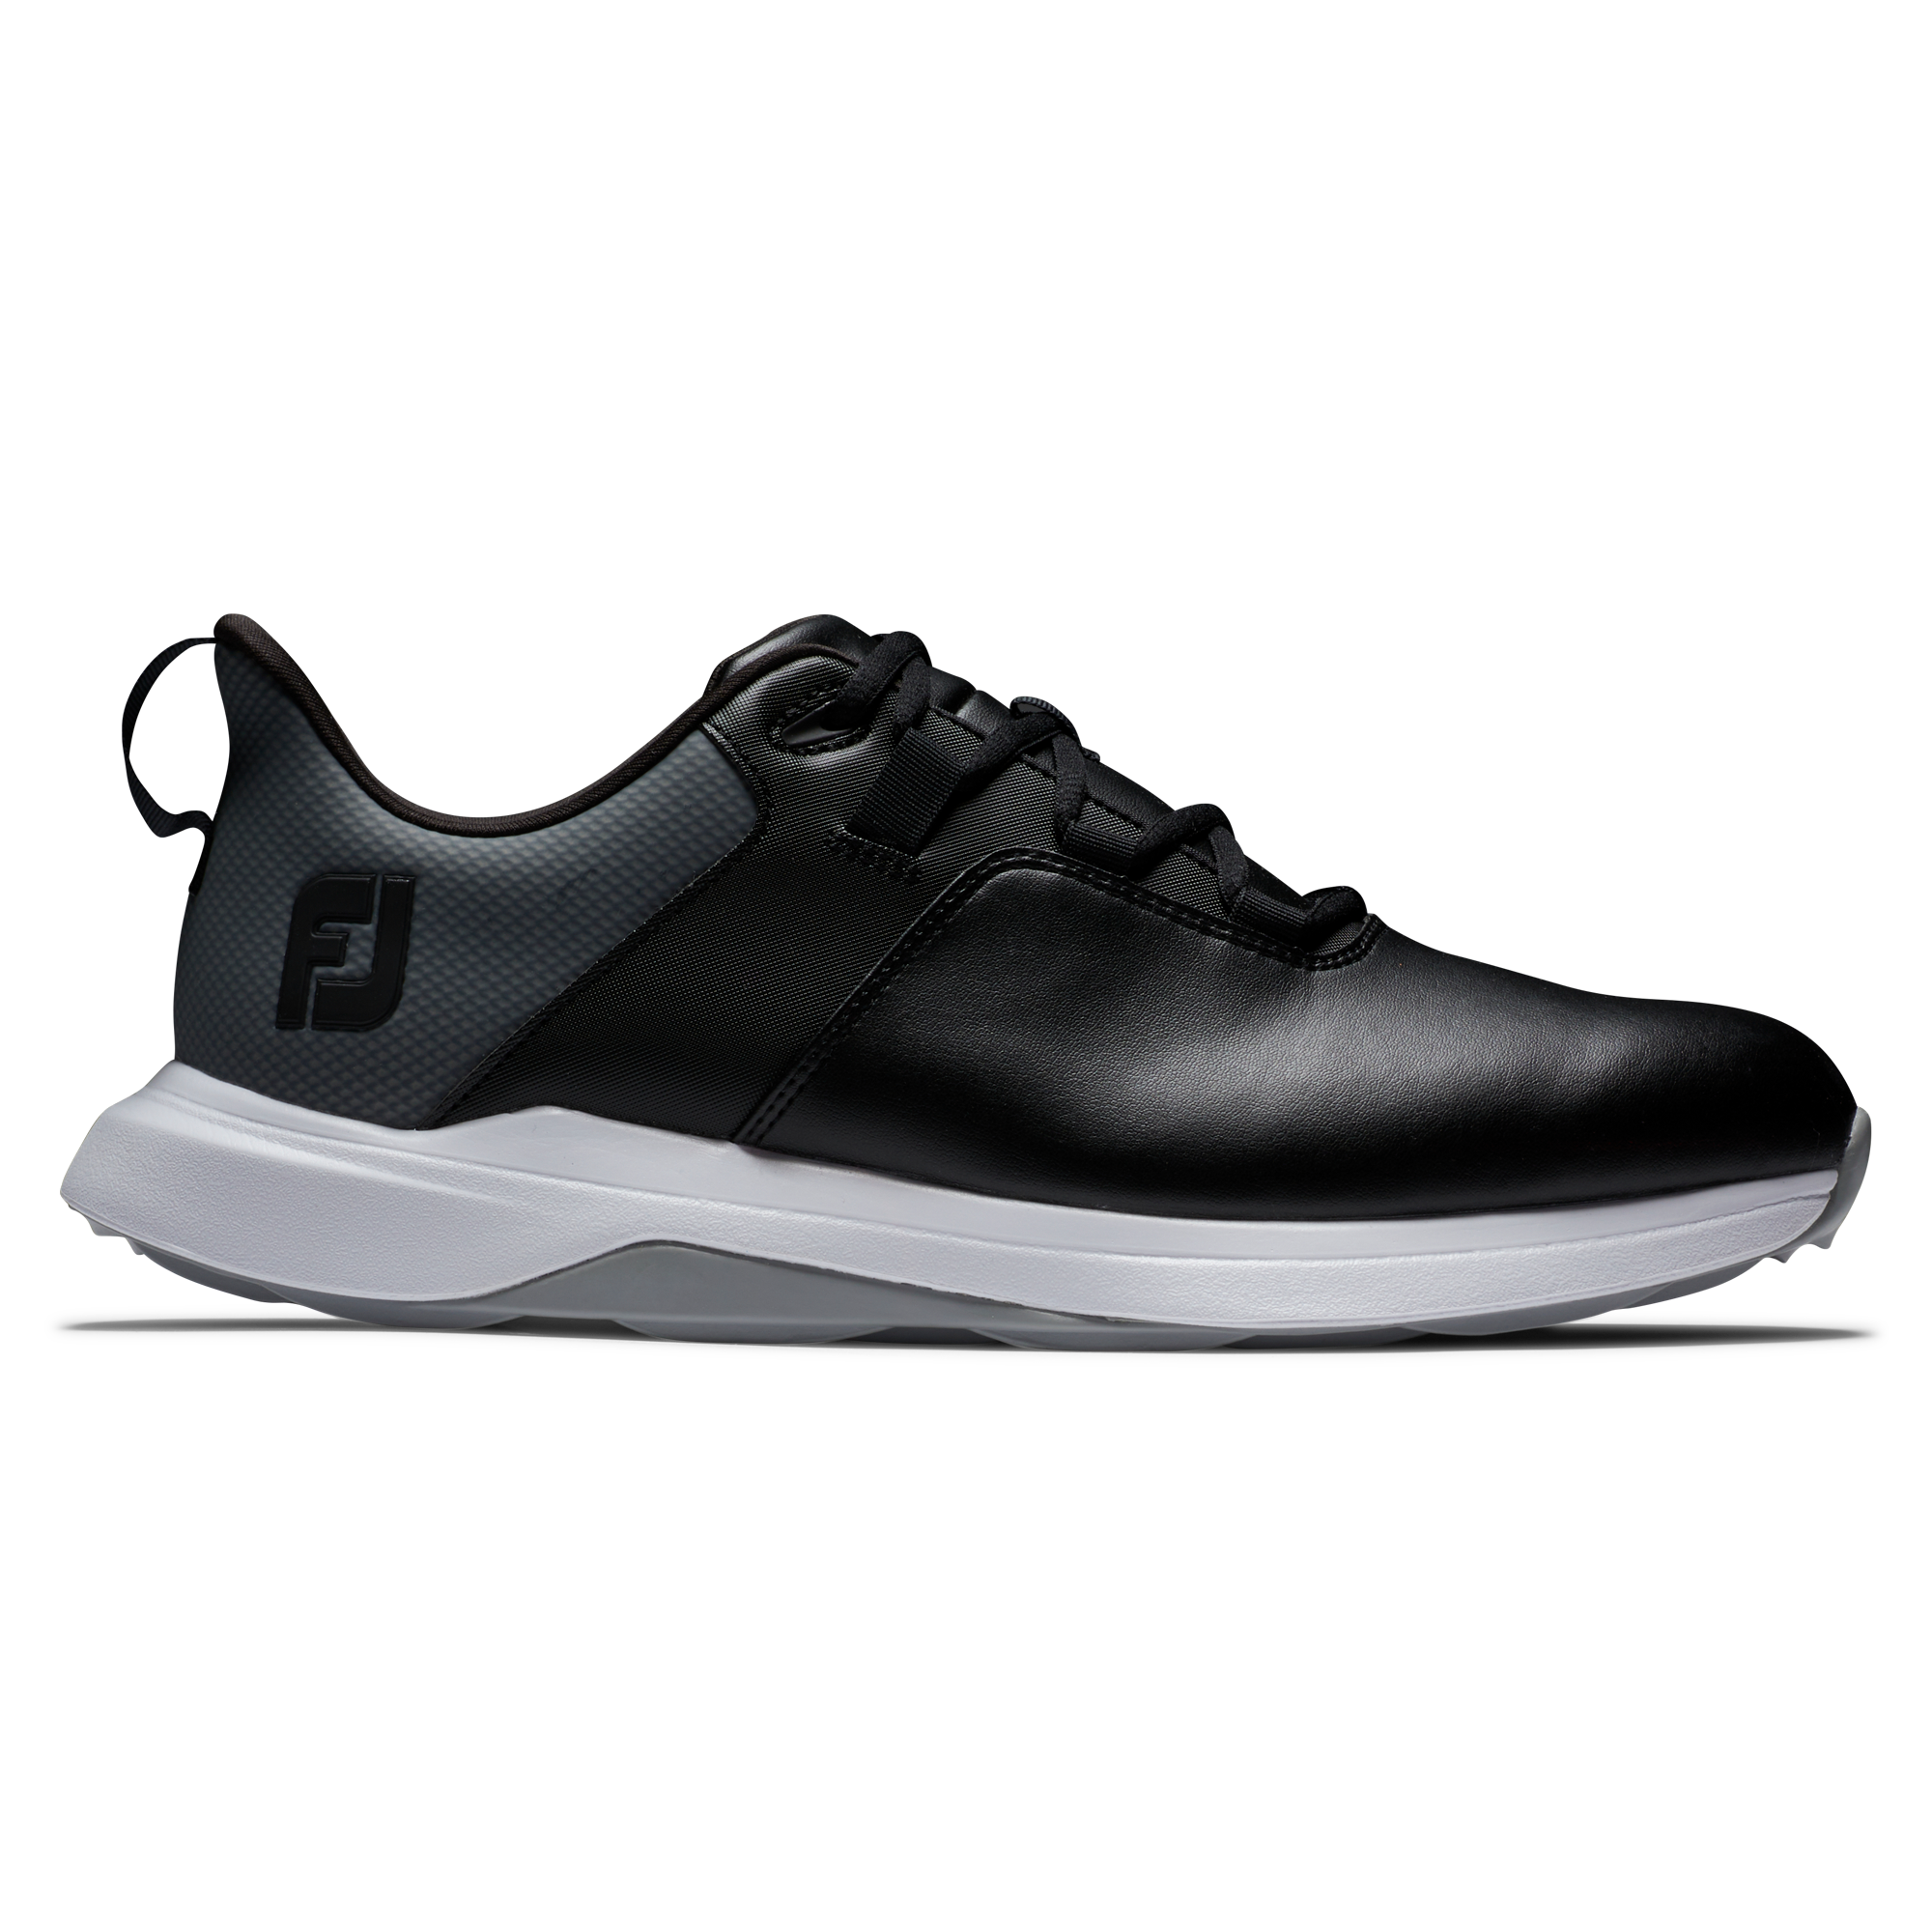 FootJoy ProLite pánské golfové boty, černé, vel. 7 UK